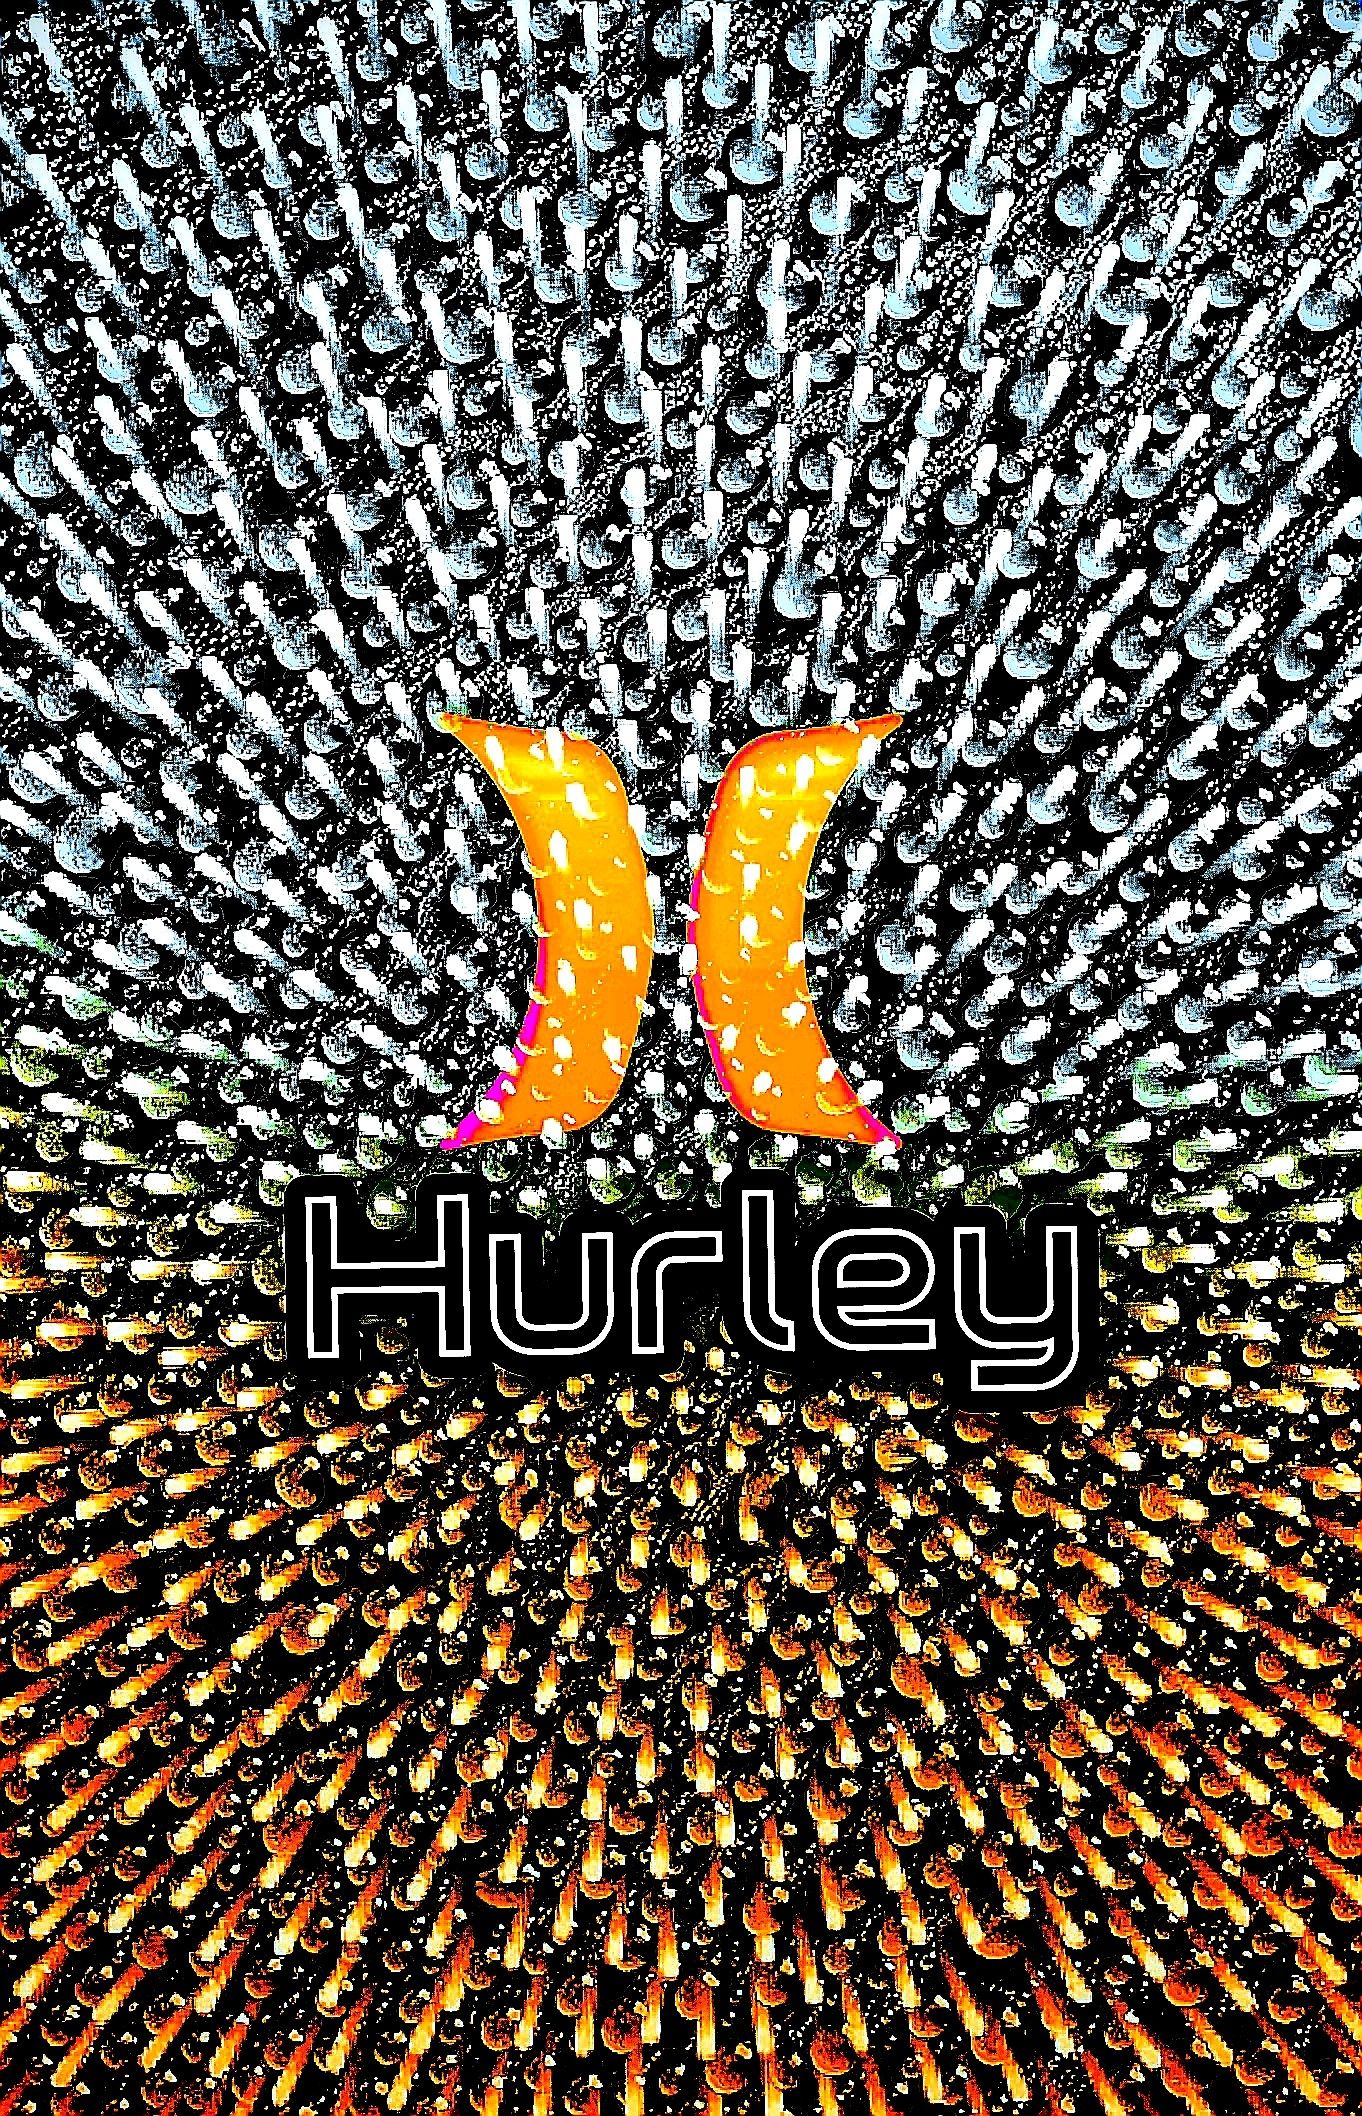 Hurley wallpaper. Hurley, Surfing wallpaper, Wallpaper